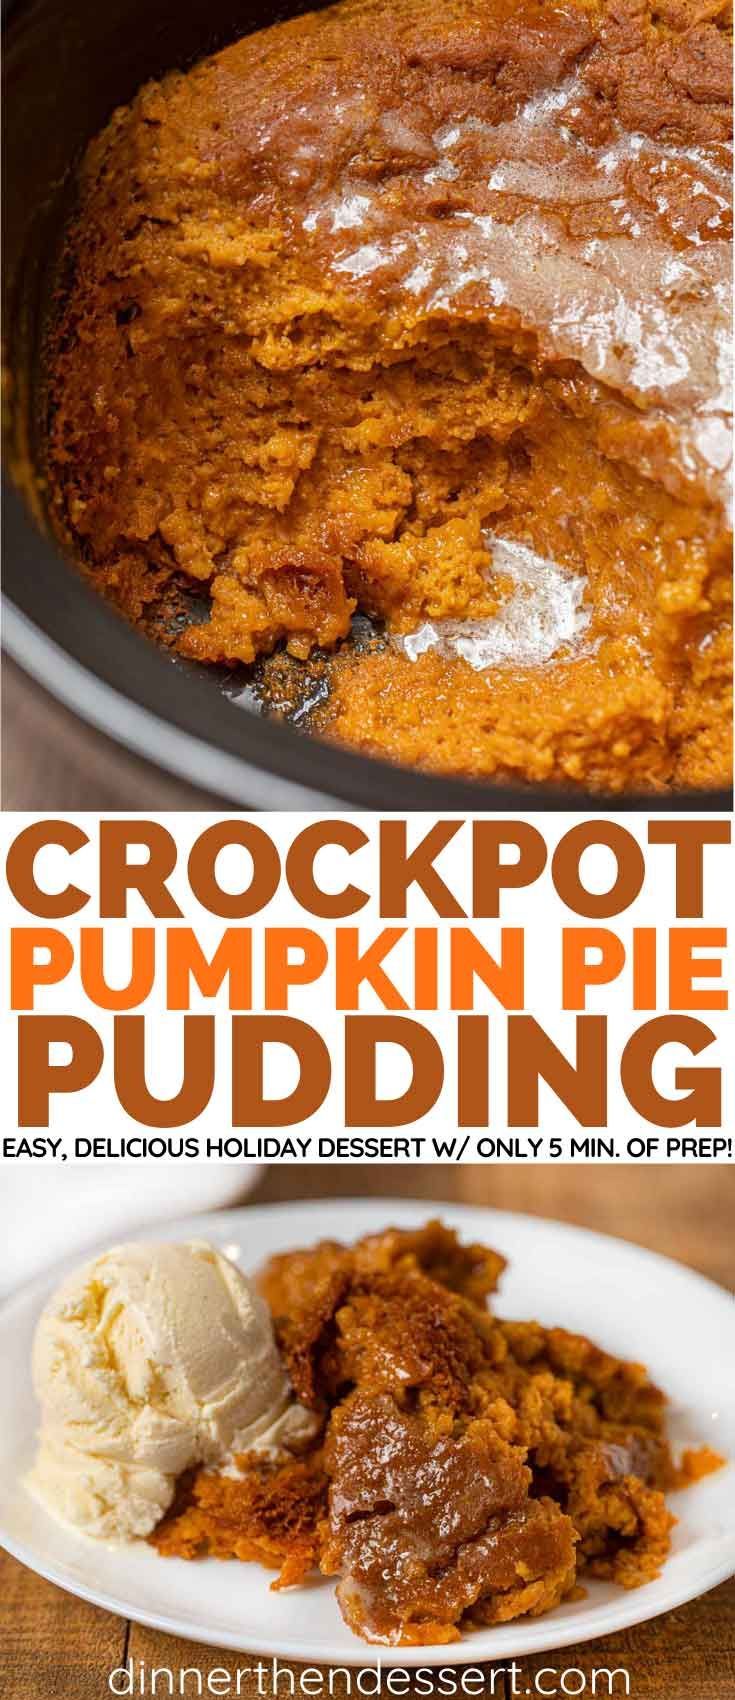 Slow Cooker Pumpkin Pie Pudding Recipe (Crockpot) - Dinner, then Dessert -   17 holiday Desserts crockpot ideas